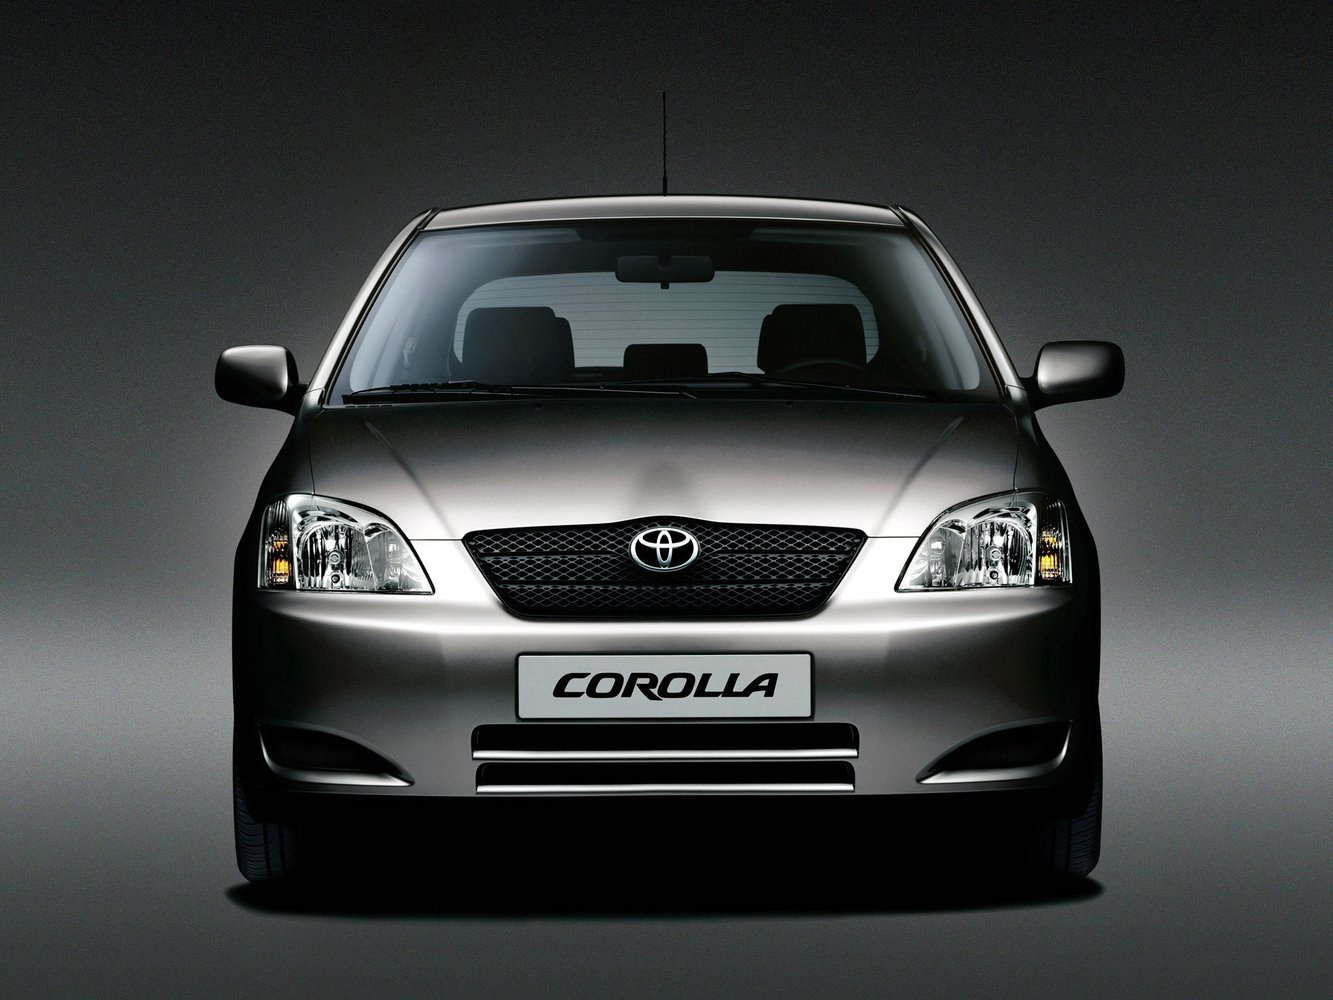 хэтчбек 5 дв. Toyota Corolla 2001 - 2004г выпуска модификация 1.4 MT (97 л.с.)